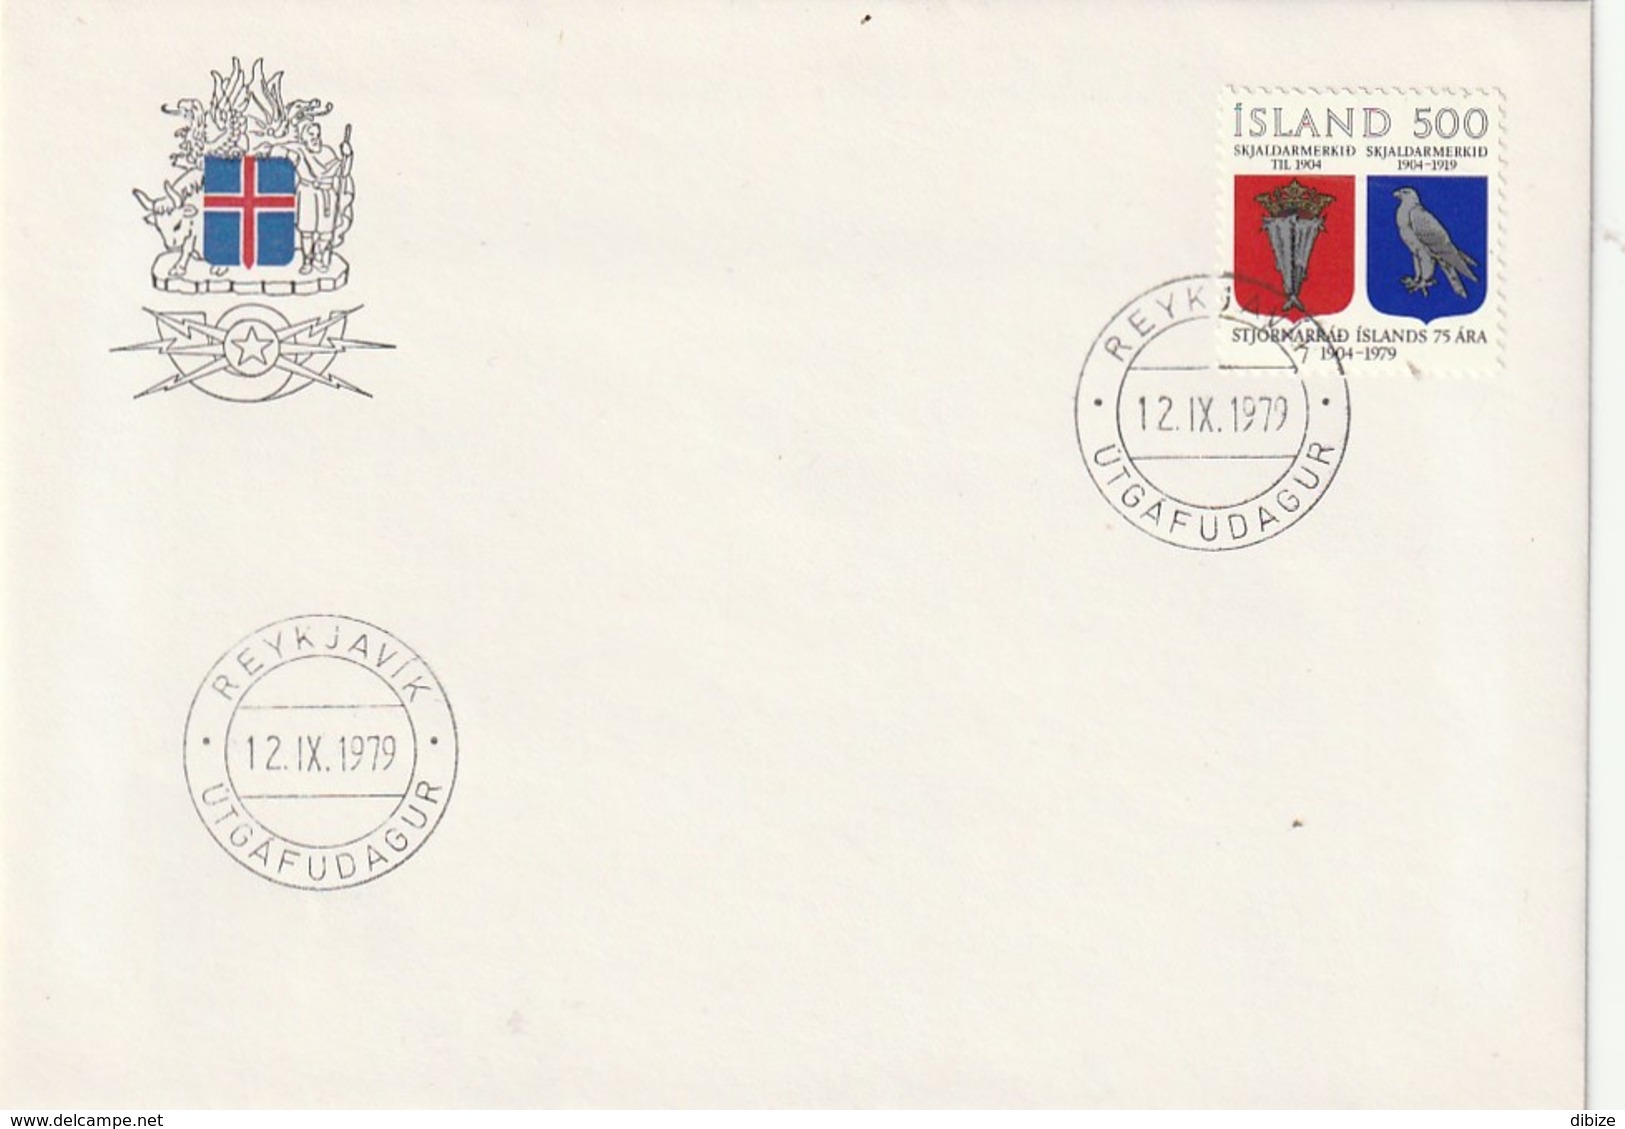 Ísland. Fyrsti Dagur útvarpsþáttur. 1979. Skjaldarmerkid. 1904-1919. - Covers & Documents